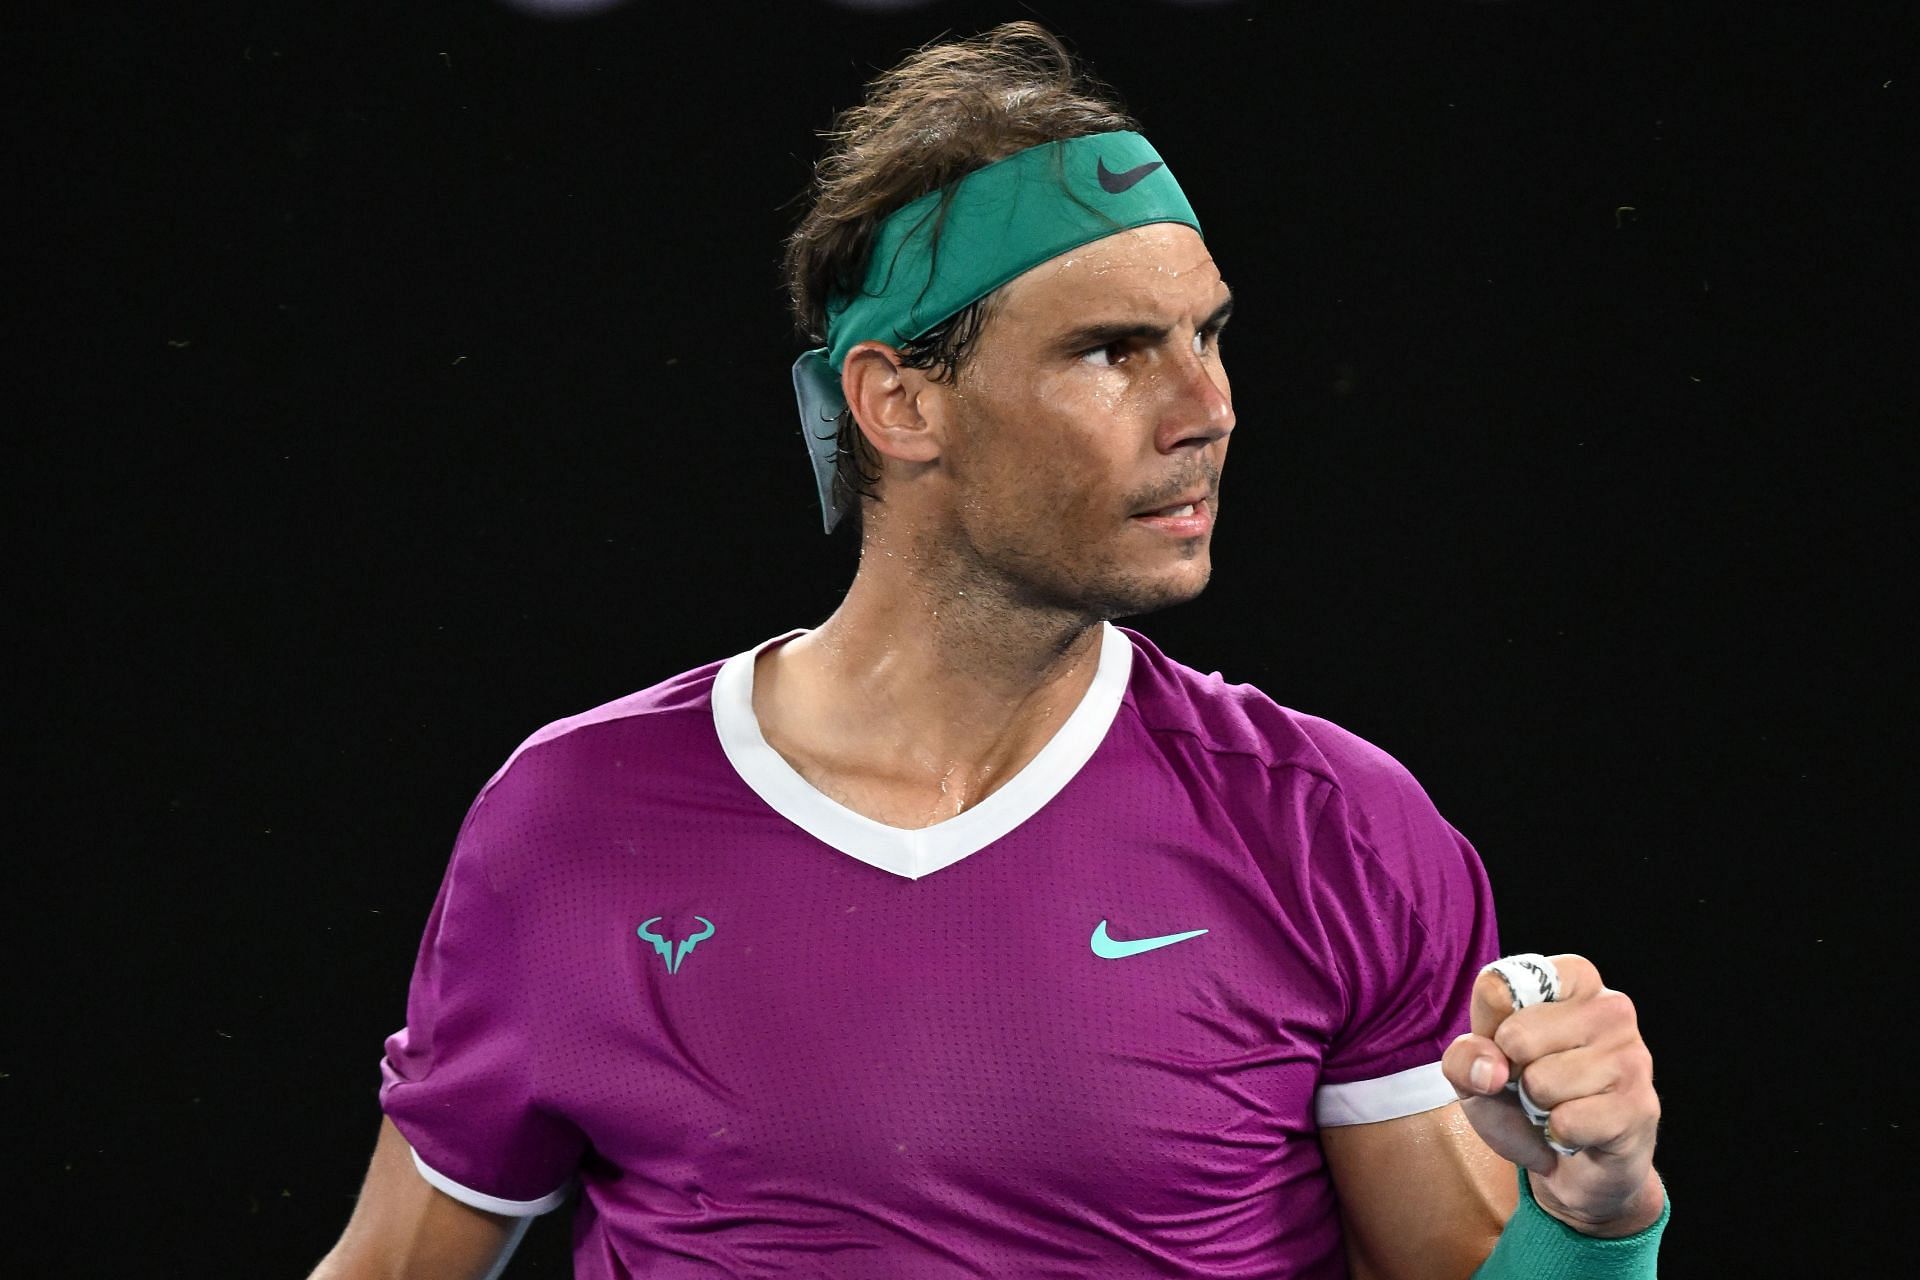 Rafael Nadal will begin his US Open prep at the Cincinnati Open.